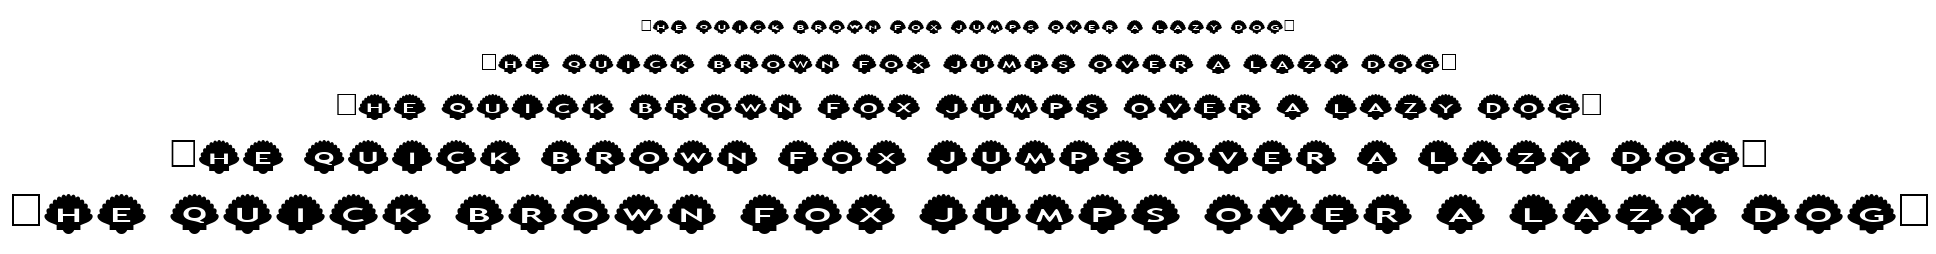 alphashapes shells font